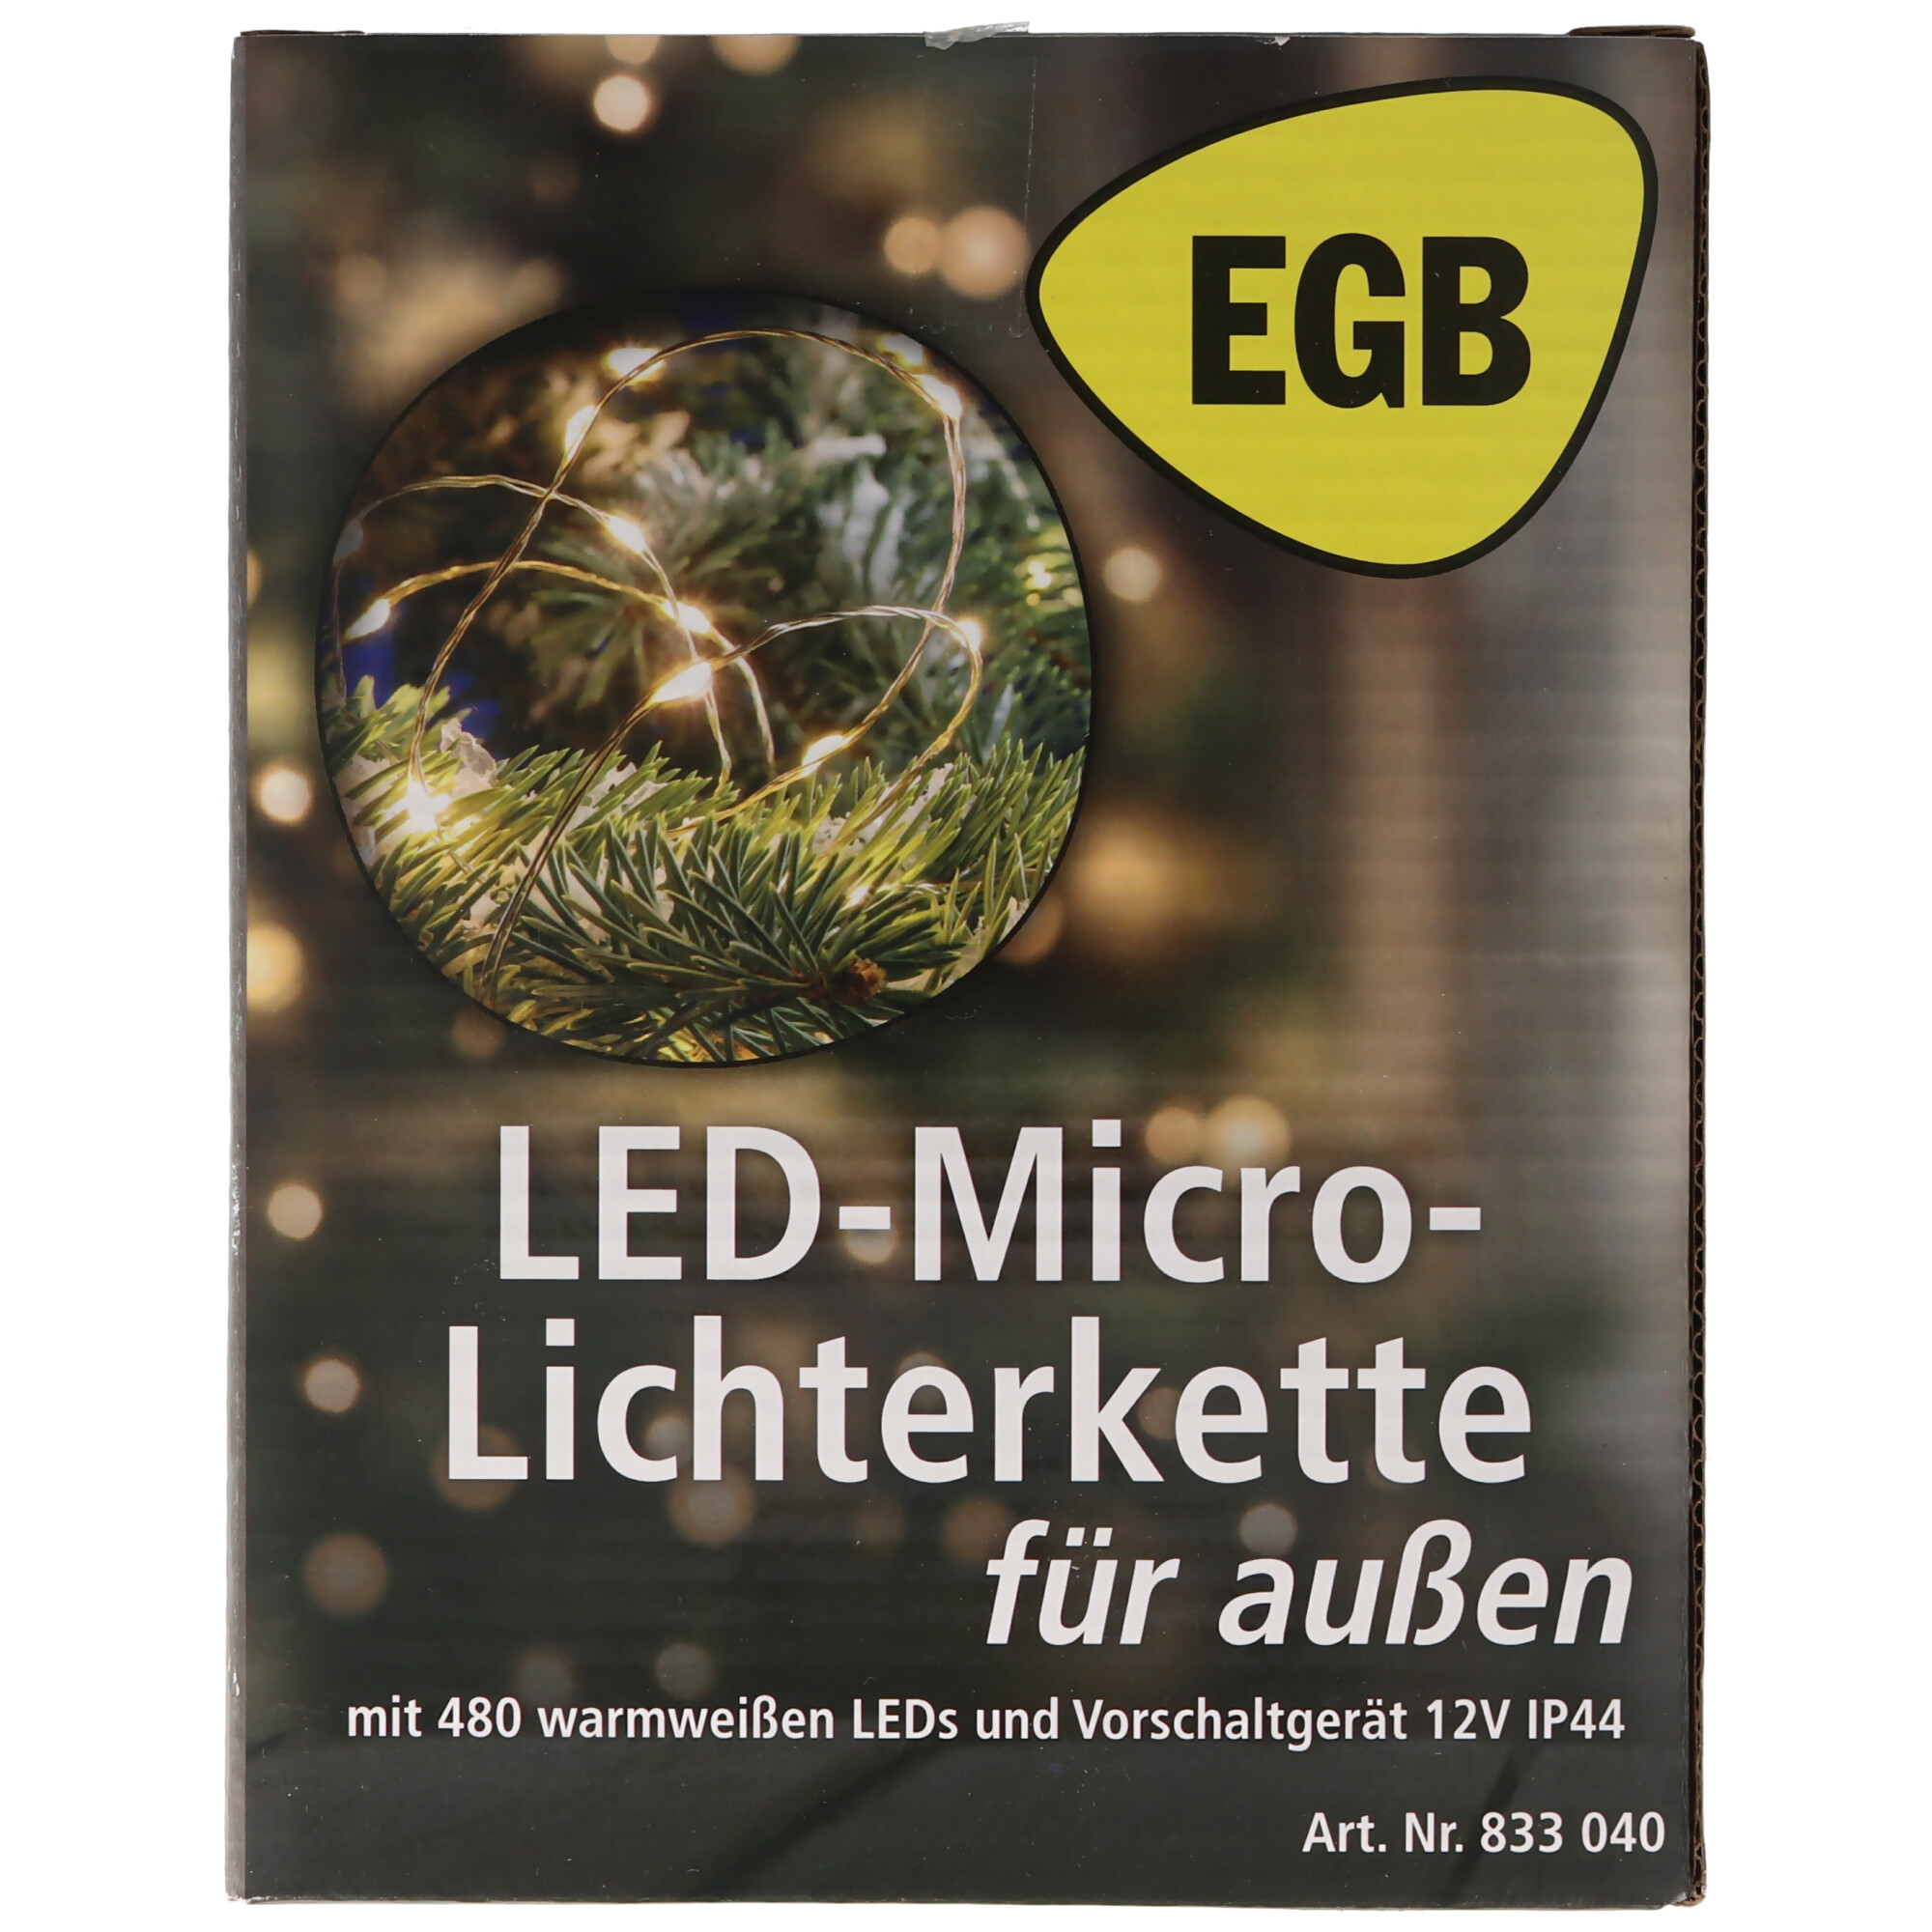 EGB LED-Micro-Lichterkette 480 ww LED 4027236043362